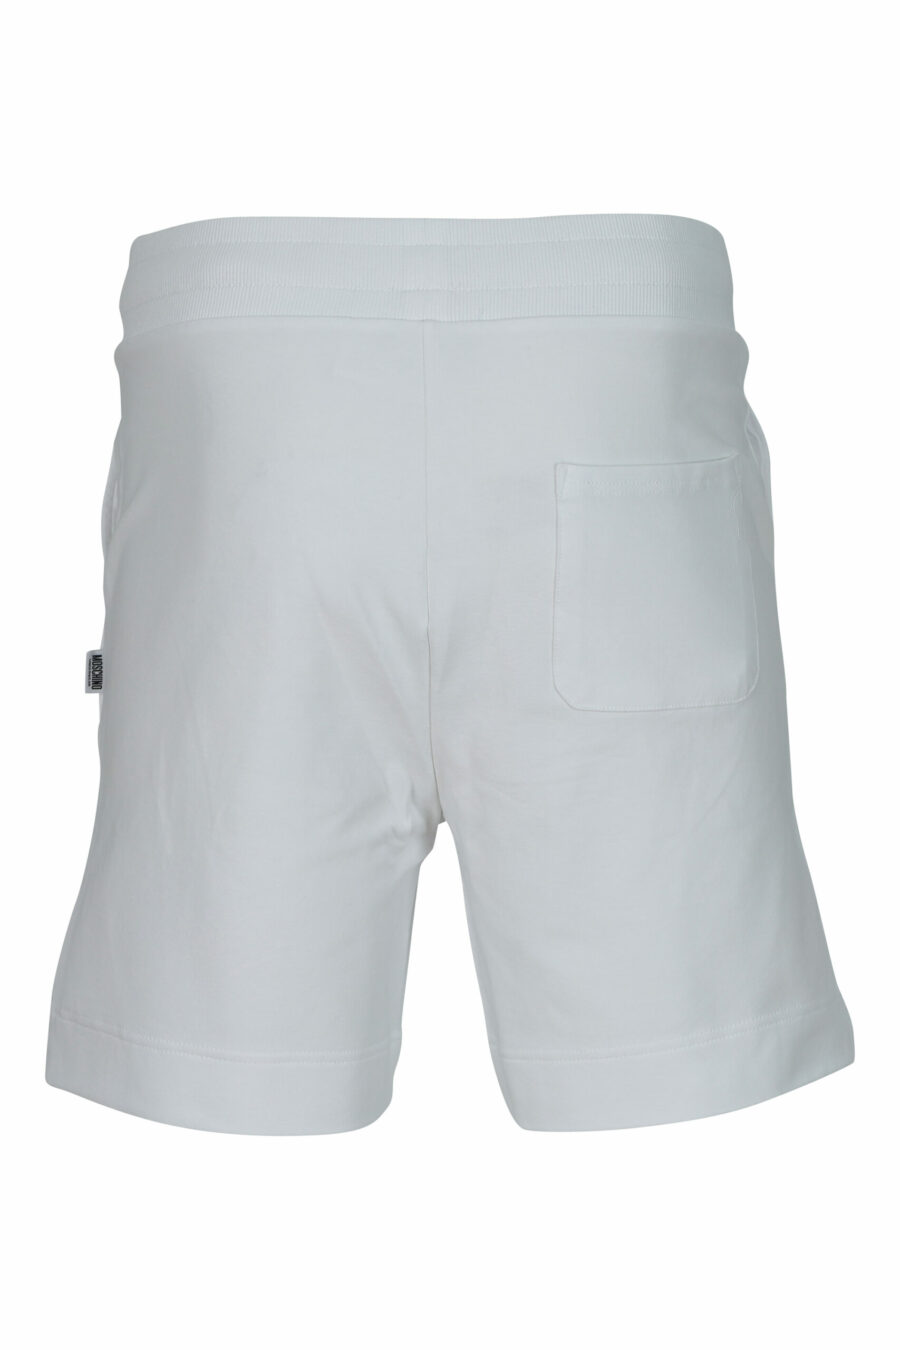 Pantalón de chándal corto blanco con minilogo oso "underbear" en goma negro - 667113622149 1 scaled